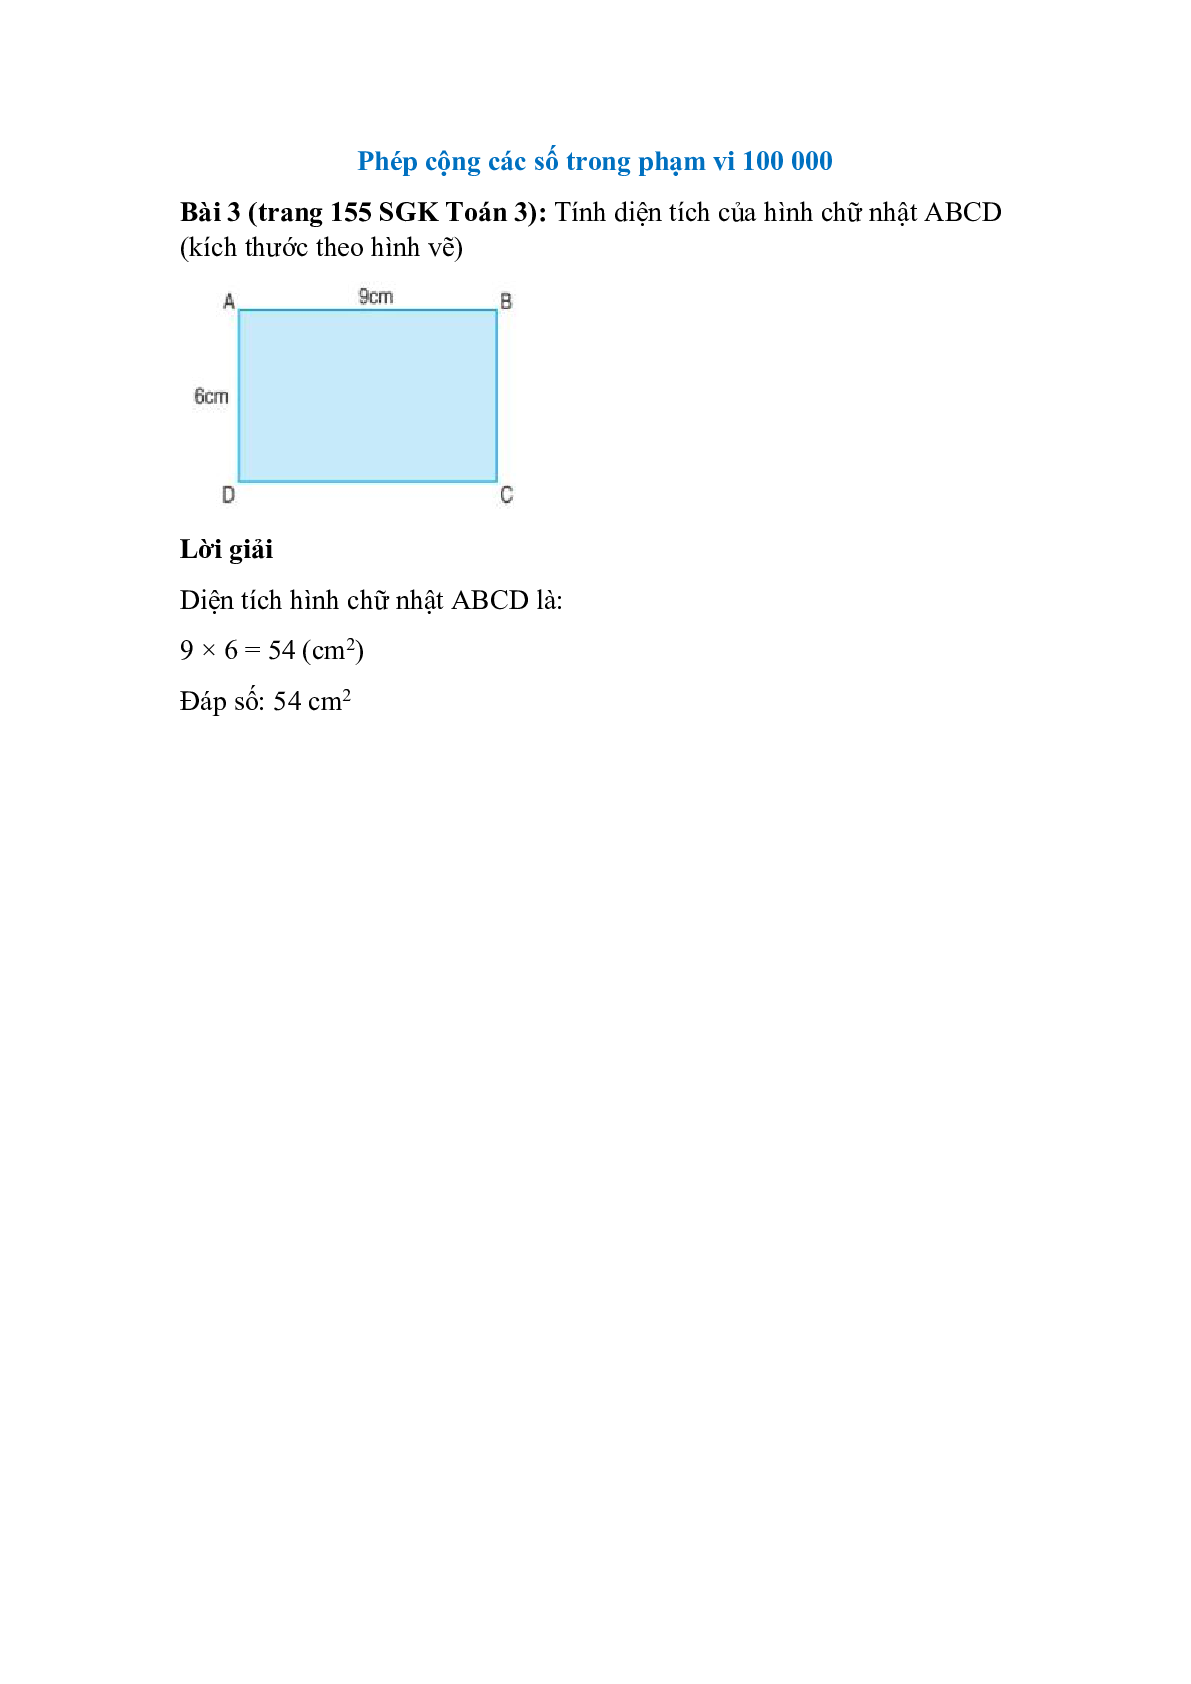 Tính diện tích của hình chữ nhật ABCD (kích thước theo hình vẽ) (trang 1)